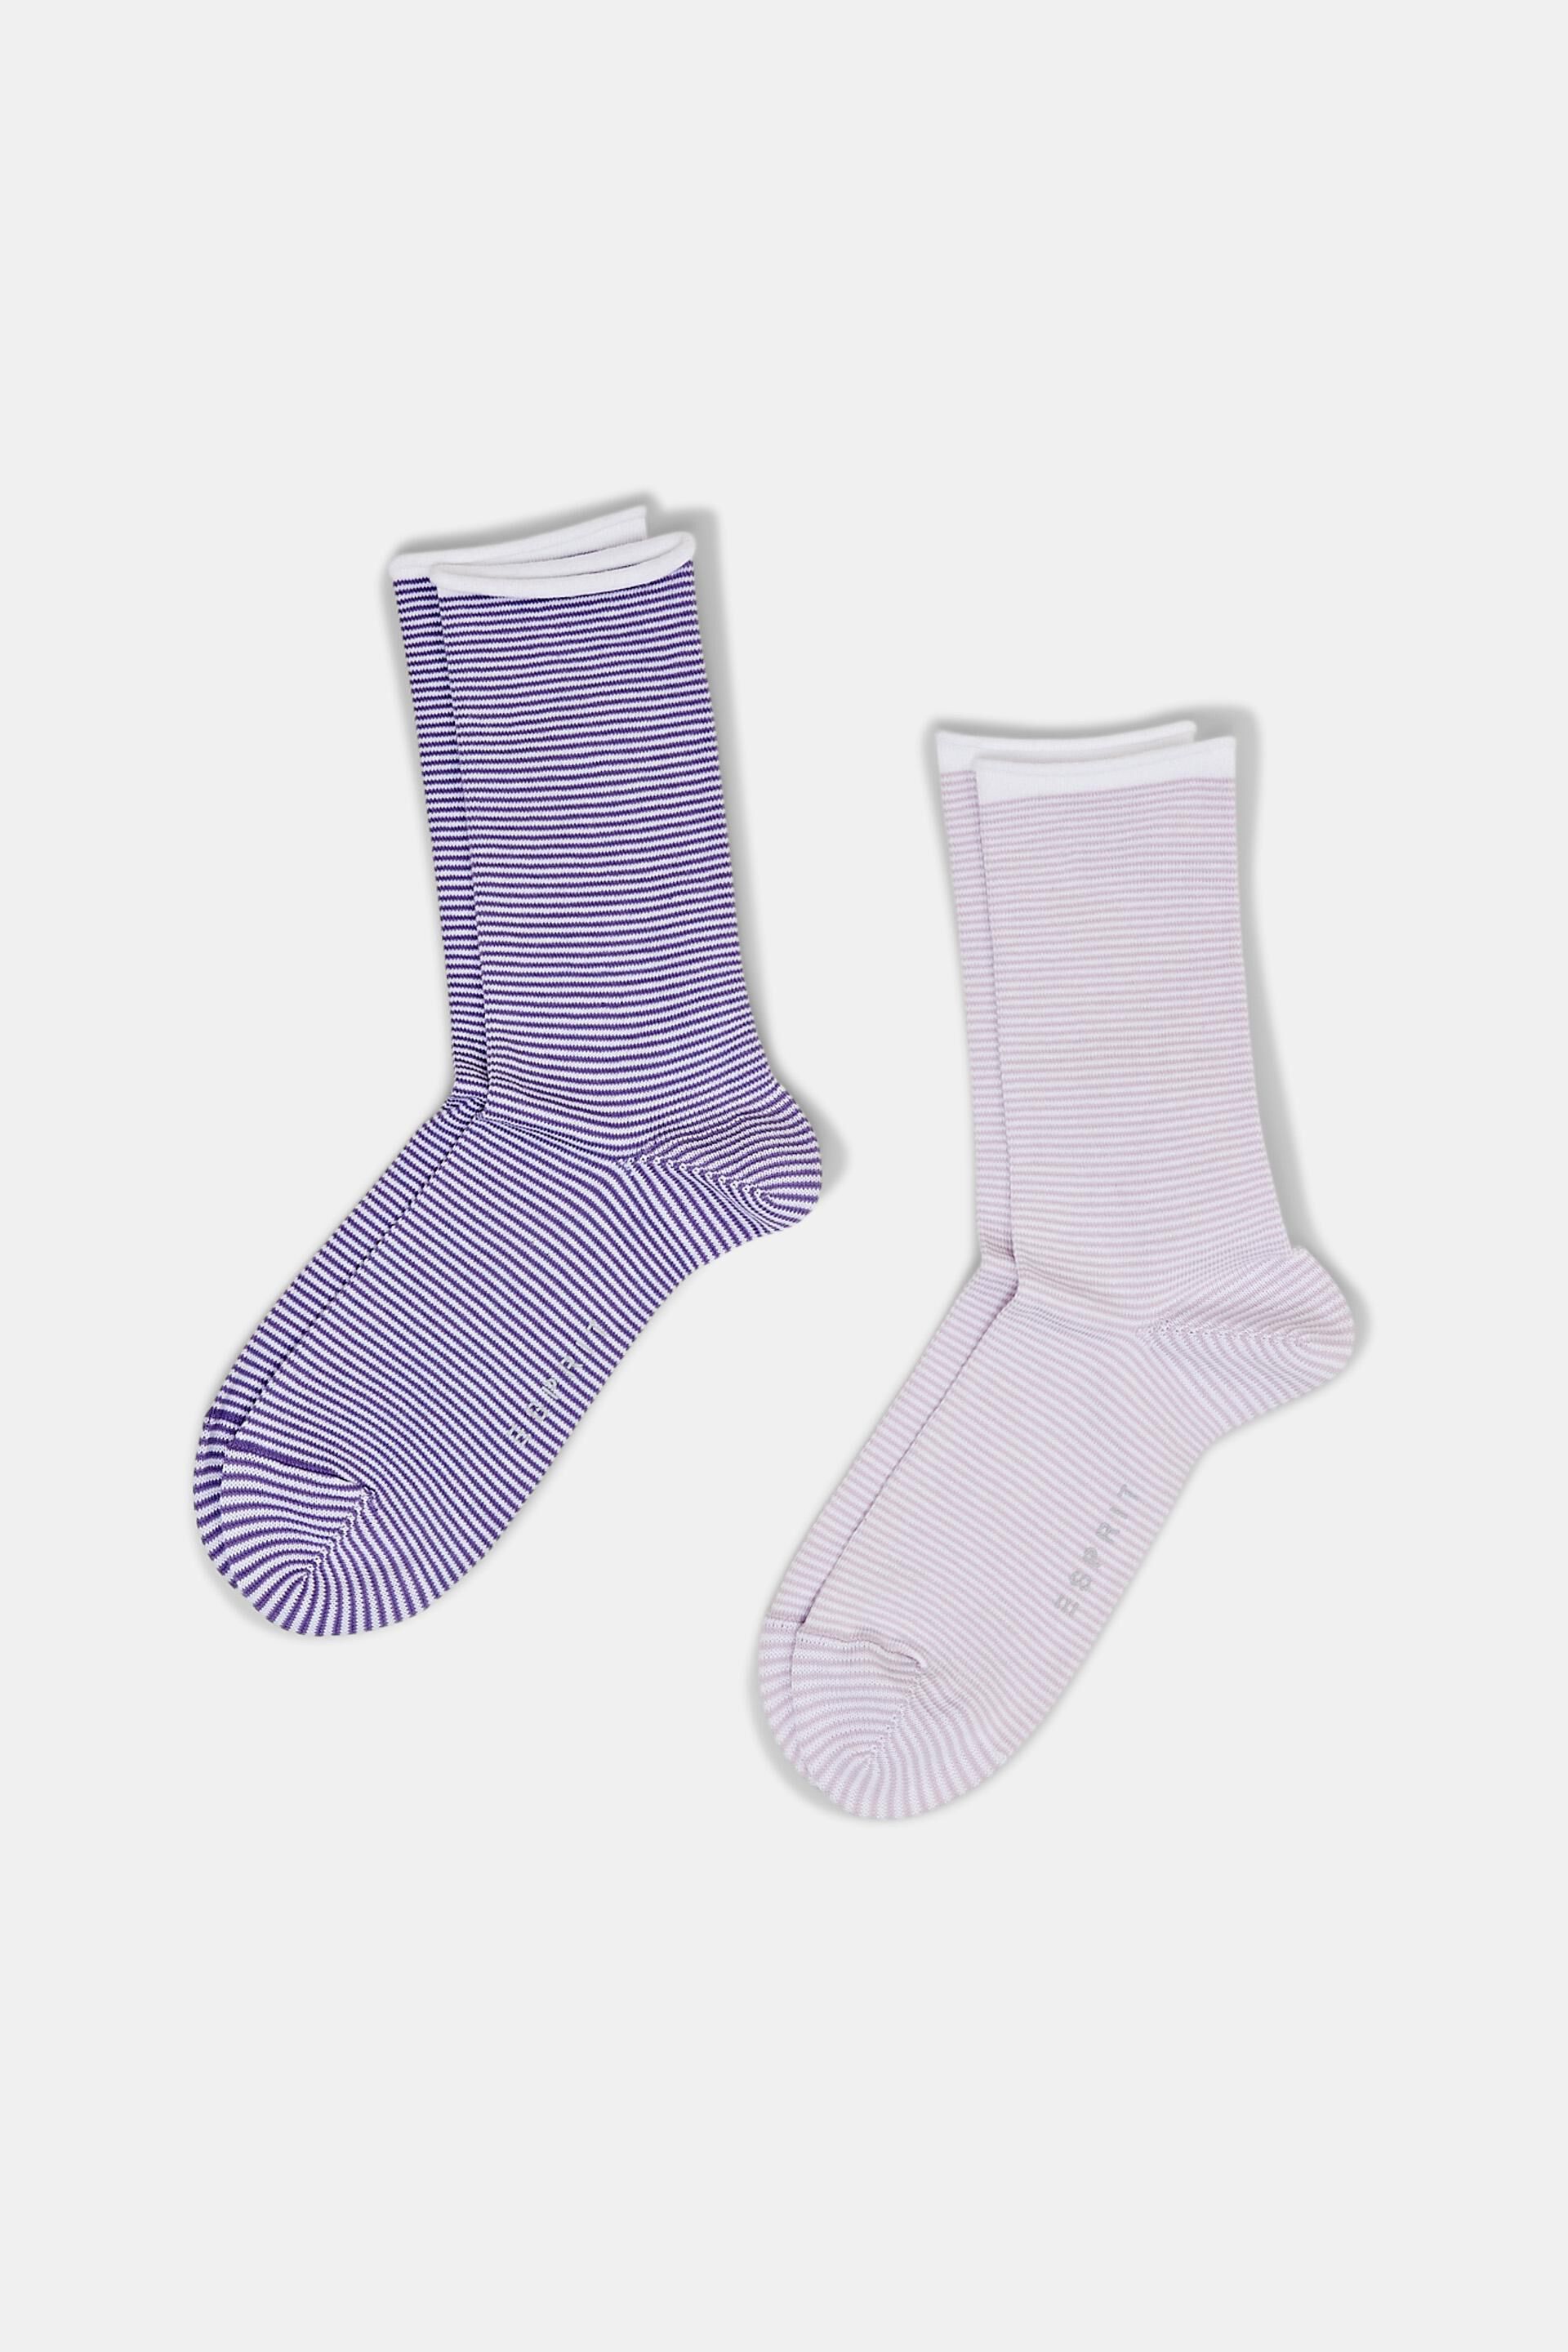 Esprit Gestreifte mit Bio-Baumwolle Rollbündchen, Socken